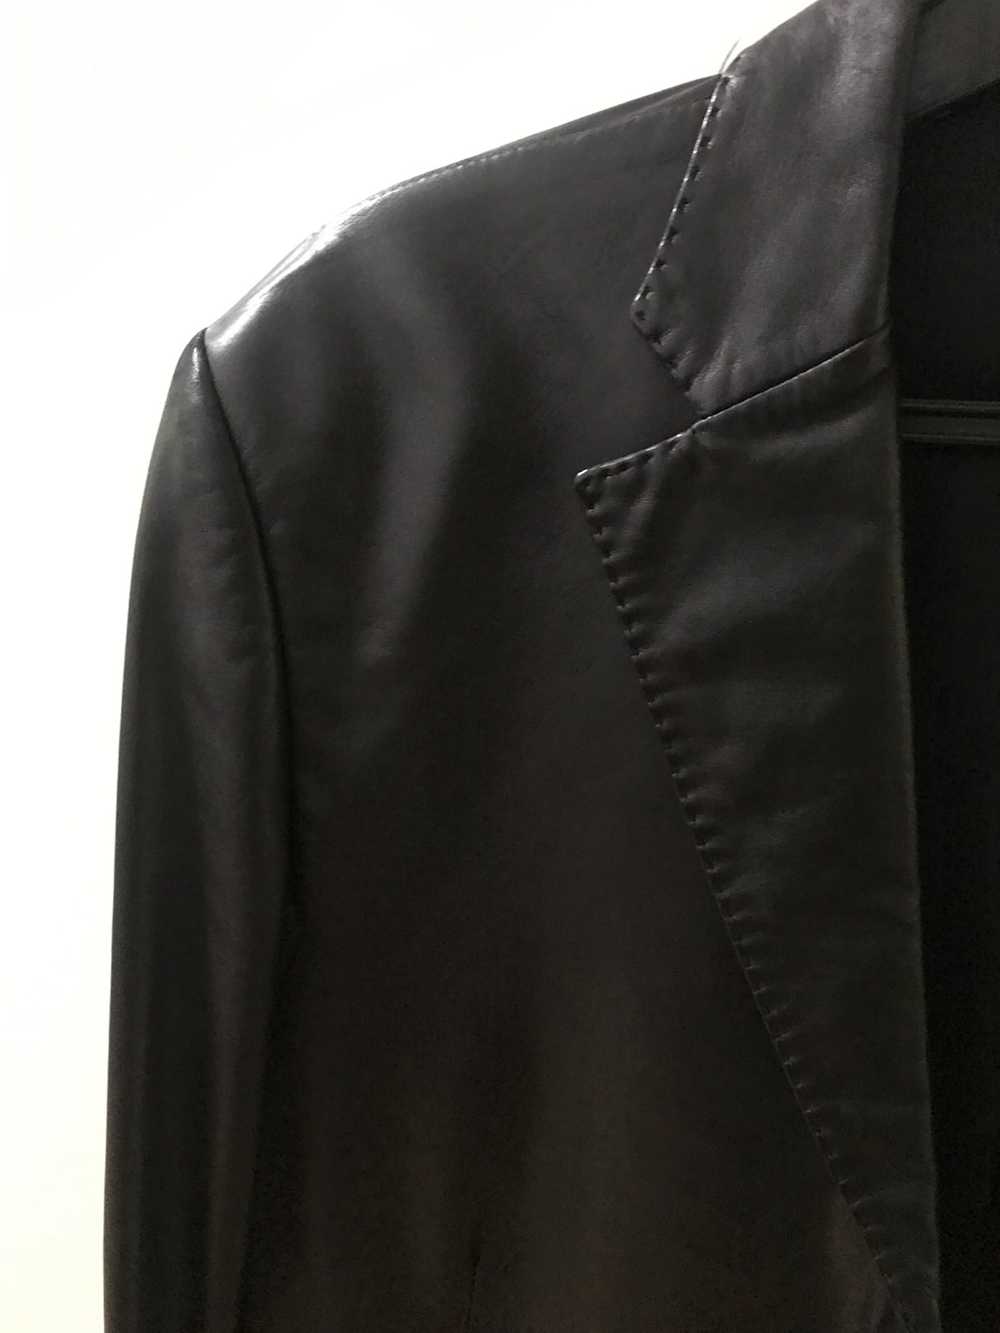 Salvatore Ferragamo Ferragamo soft leather blazer - image 6